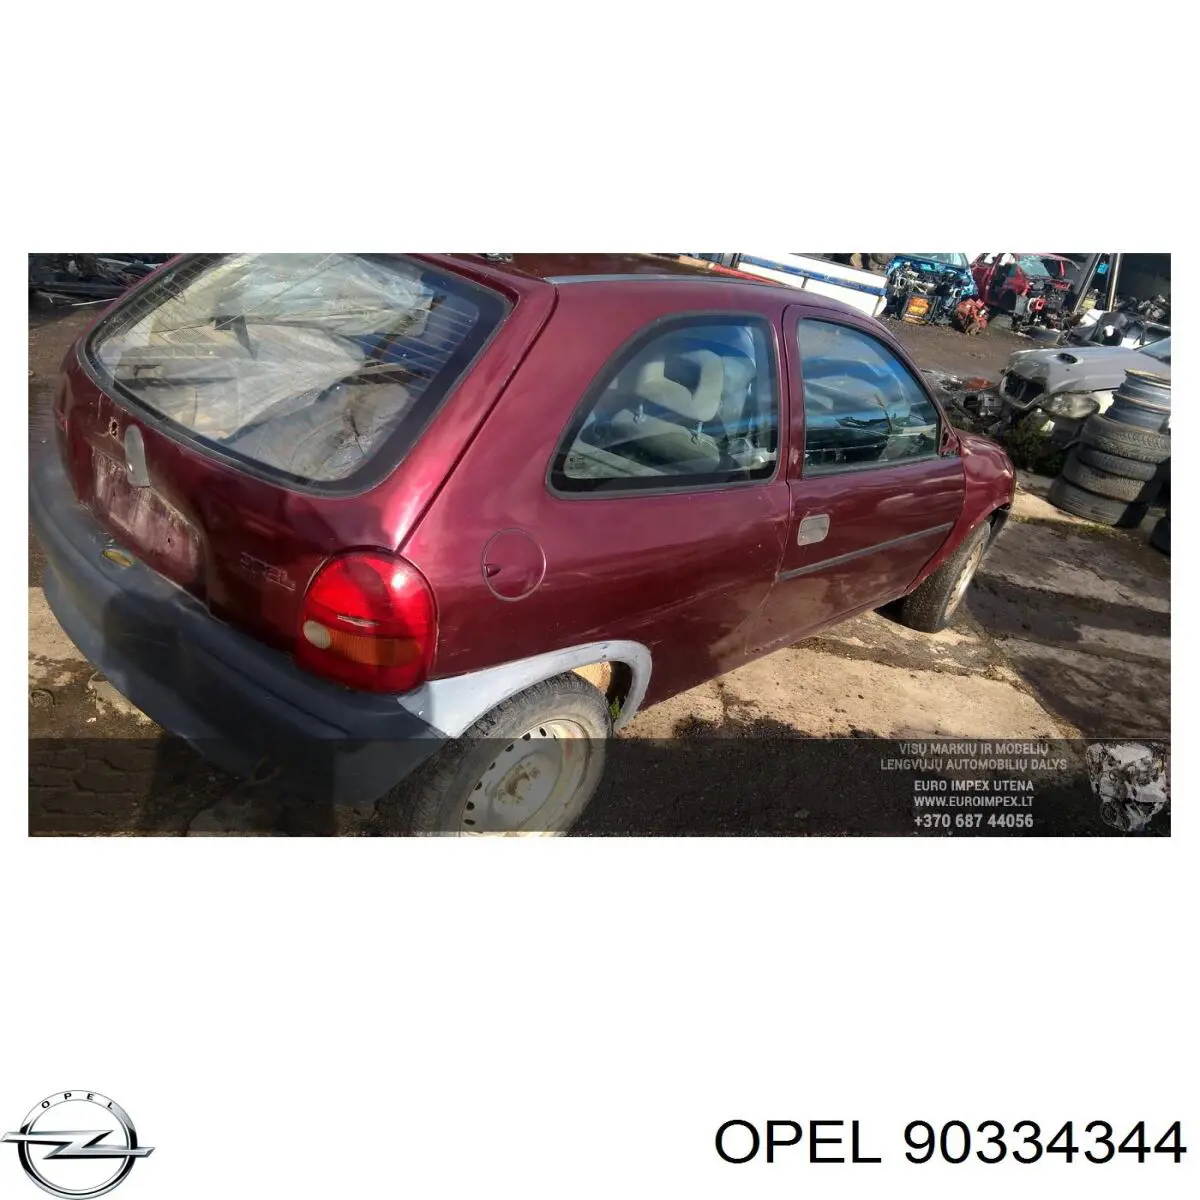 Caja de cambios mecánica, completa para Opel Vectra (88, 89)